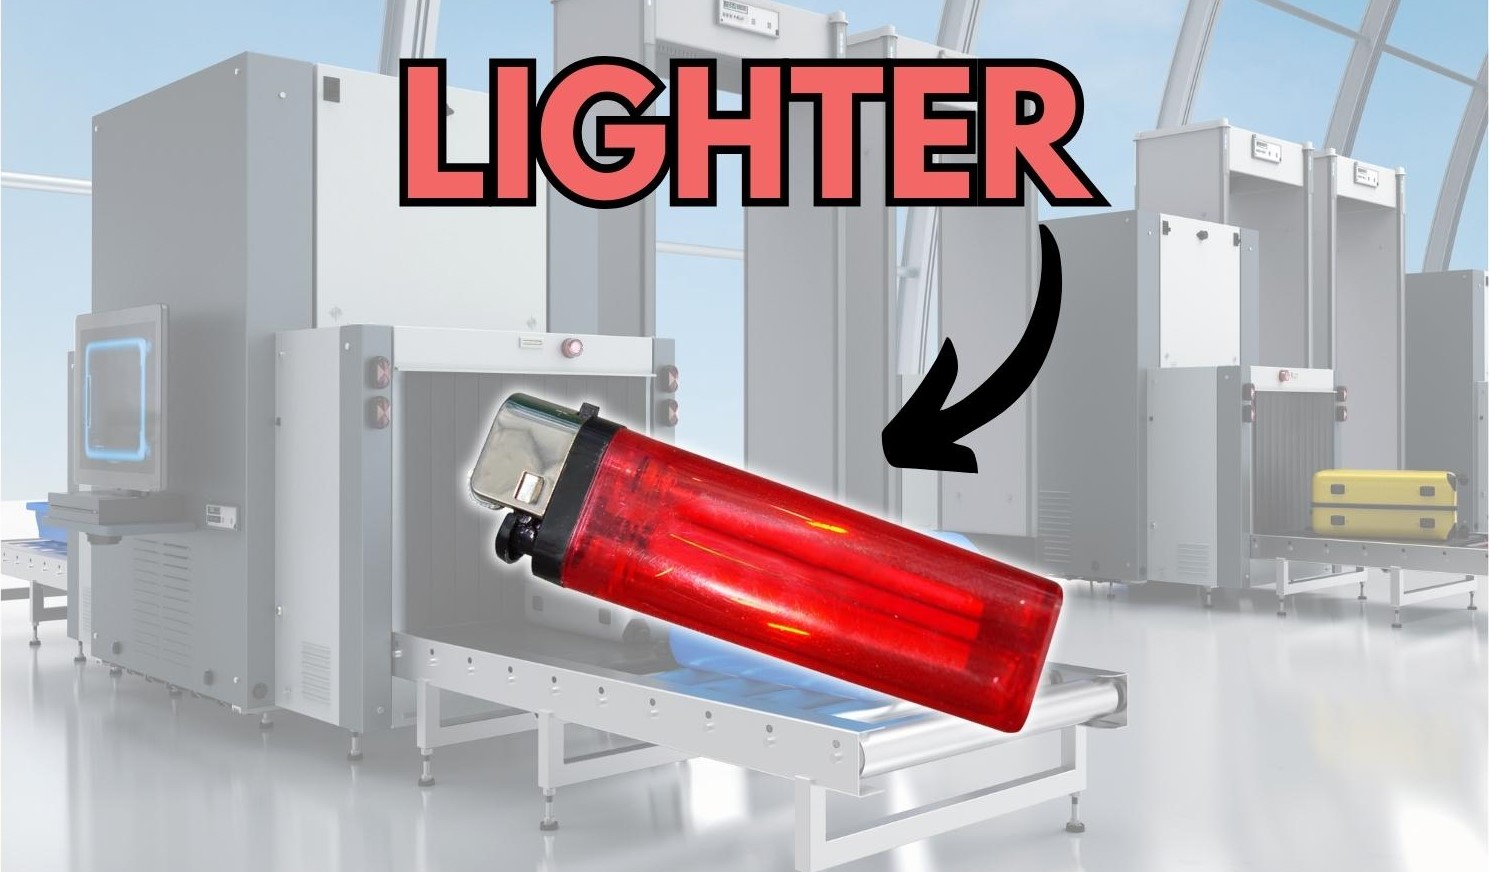 Metal Detector detect lighter